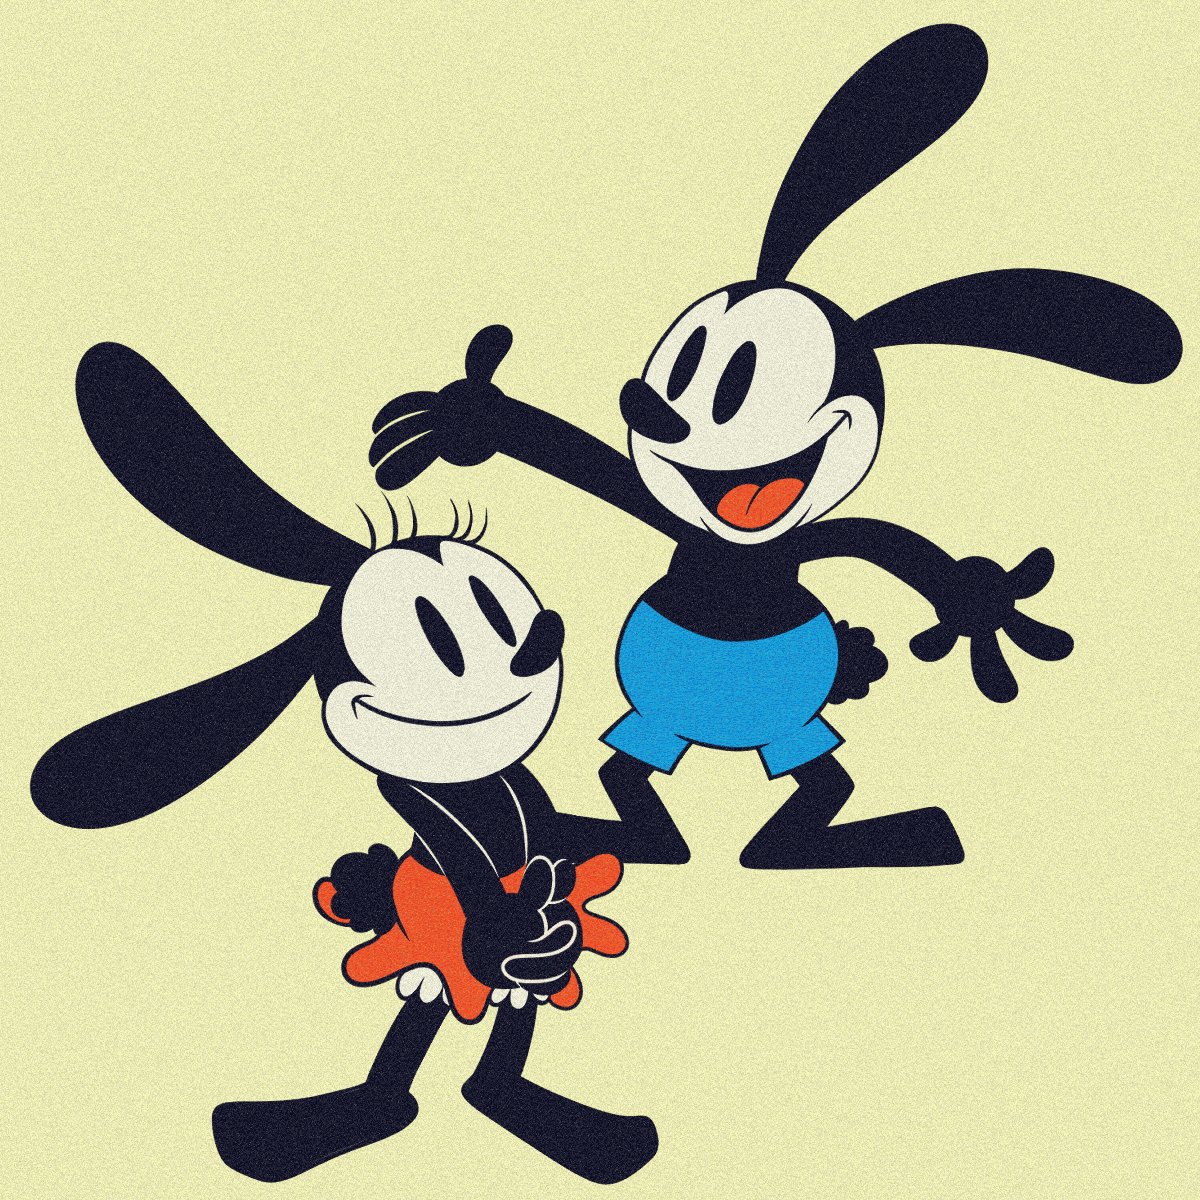 𝙗𝙤𝙤𝙥𝙢𝙖𝙣𝙞𝙖 ブープマニア しあわせウサギのオズワルド 9月5日は ディズニーキャラクター しあわせウサギのオズワルド のスクリーンデビュー 93周年の記念日です Disney ディズニー Oswaldtheluckyrabbit Oswald オズワルド